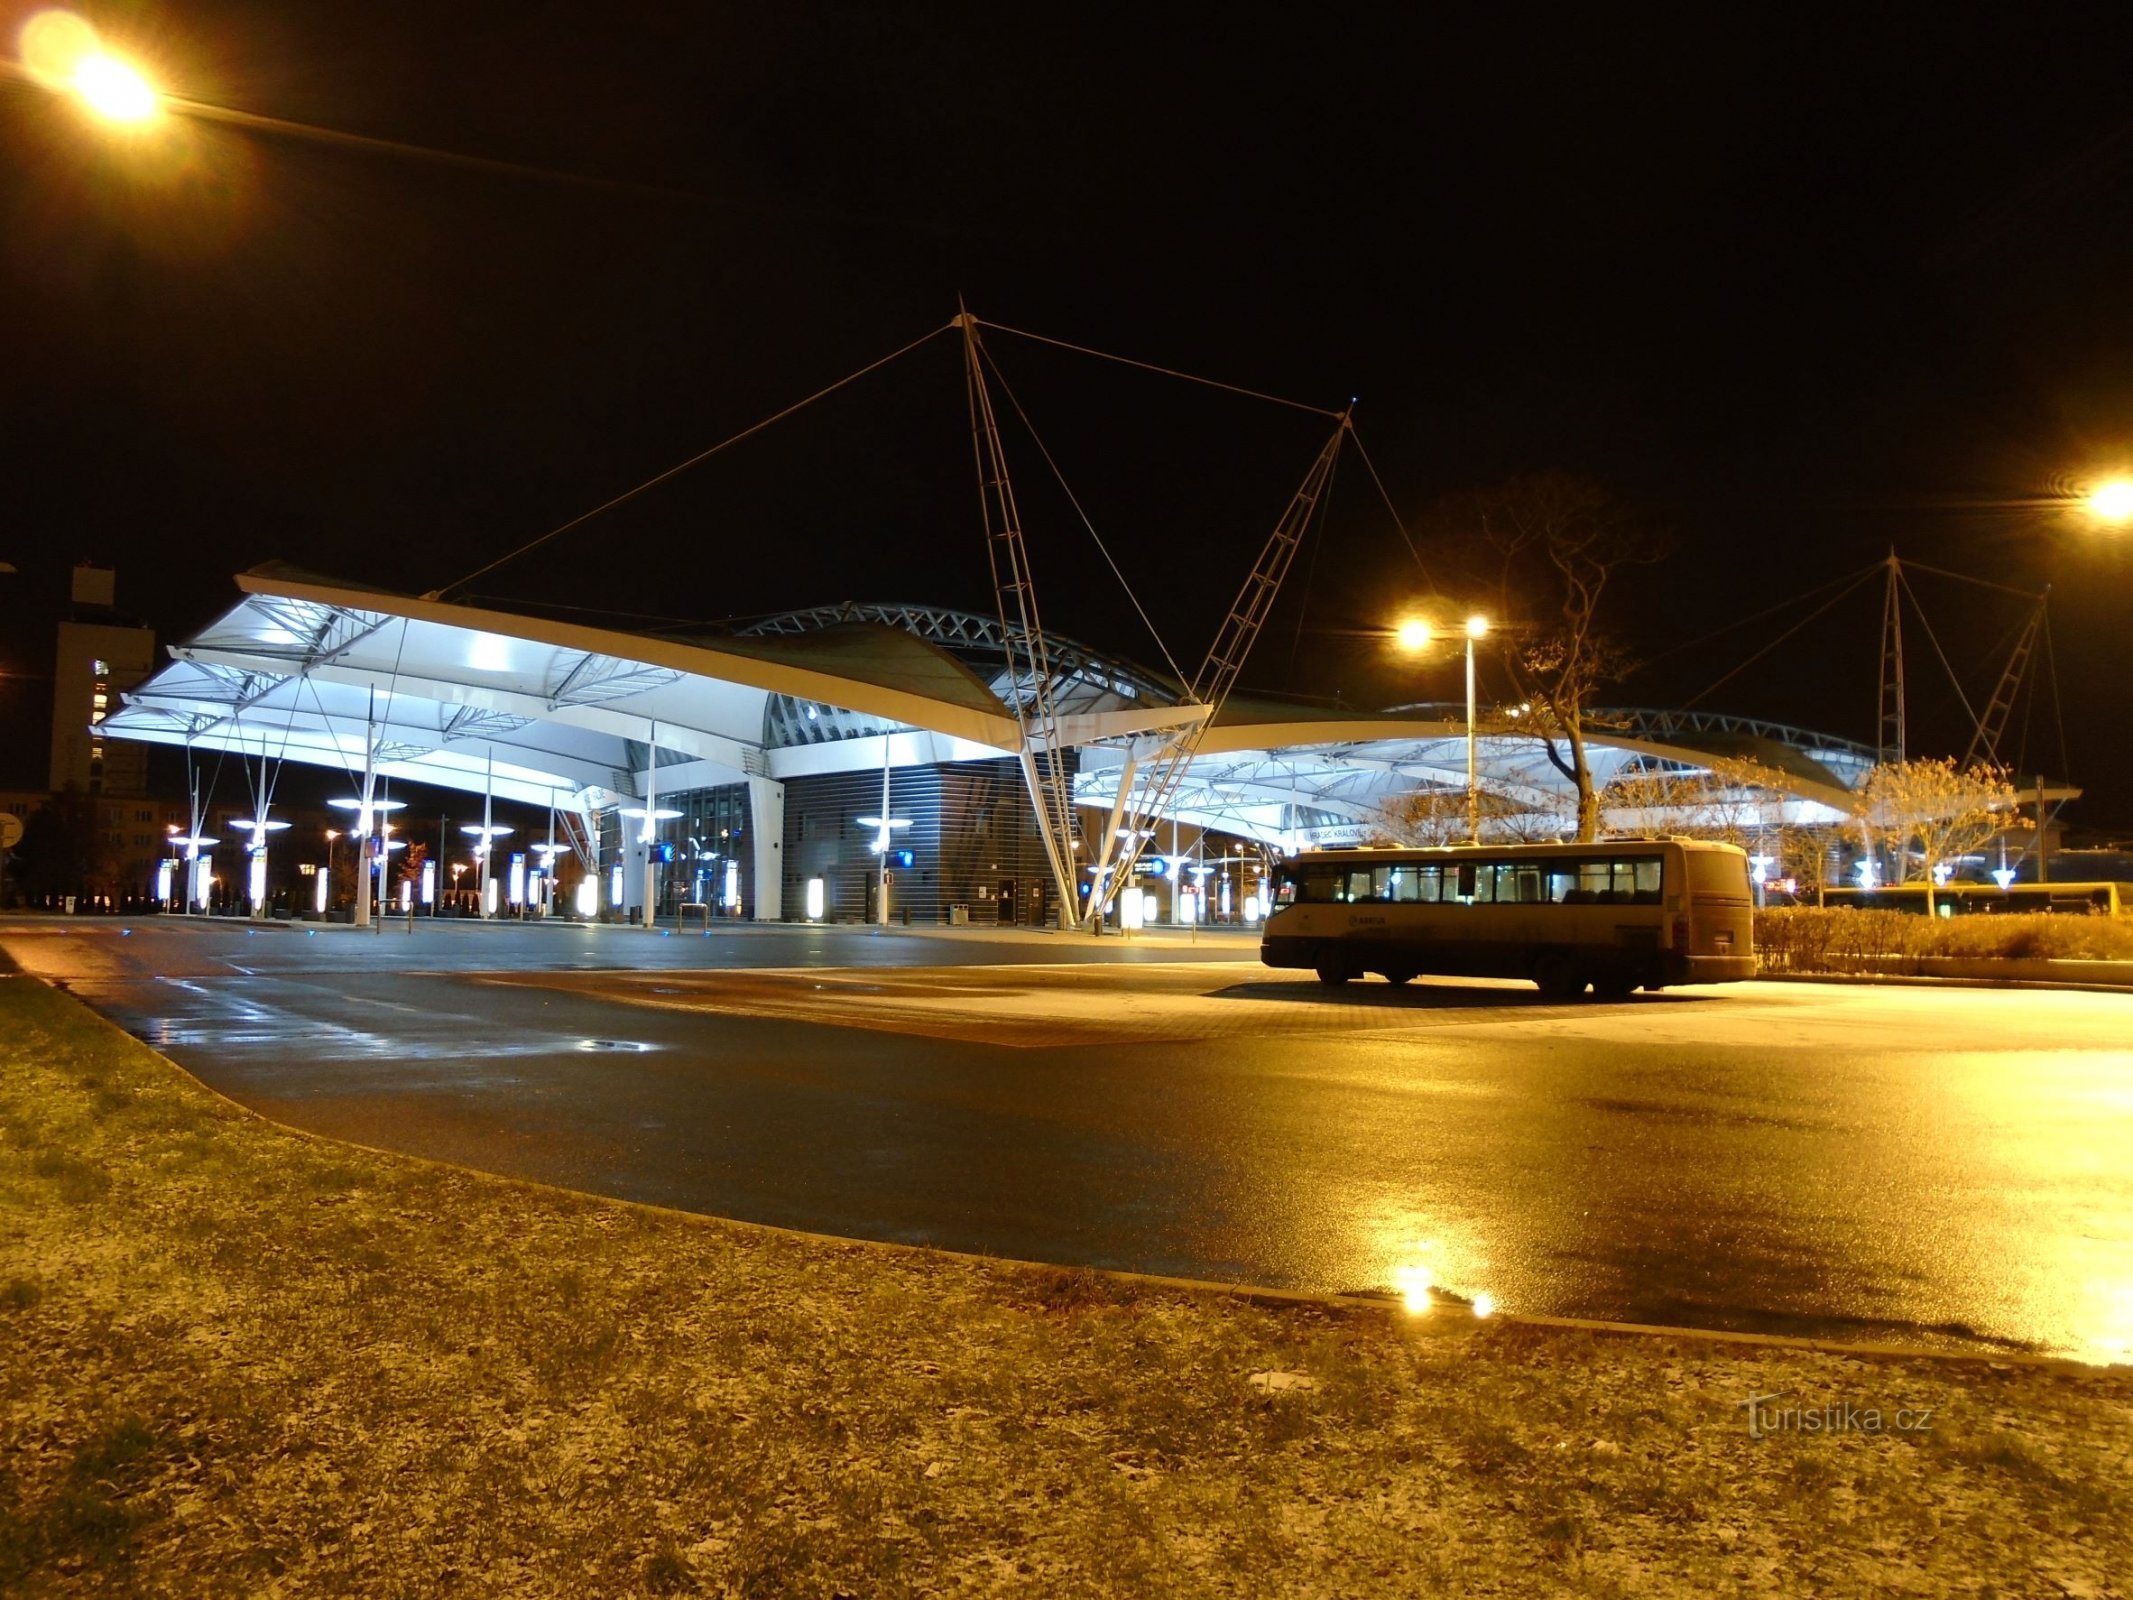 Terminal dei trasporti di massa (Hradec Králové, 10.12.2017/XNUMX/XNUMX)